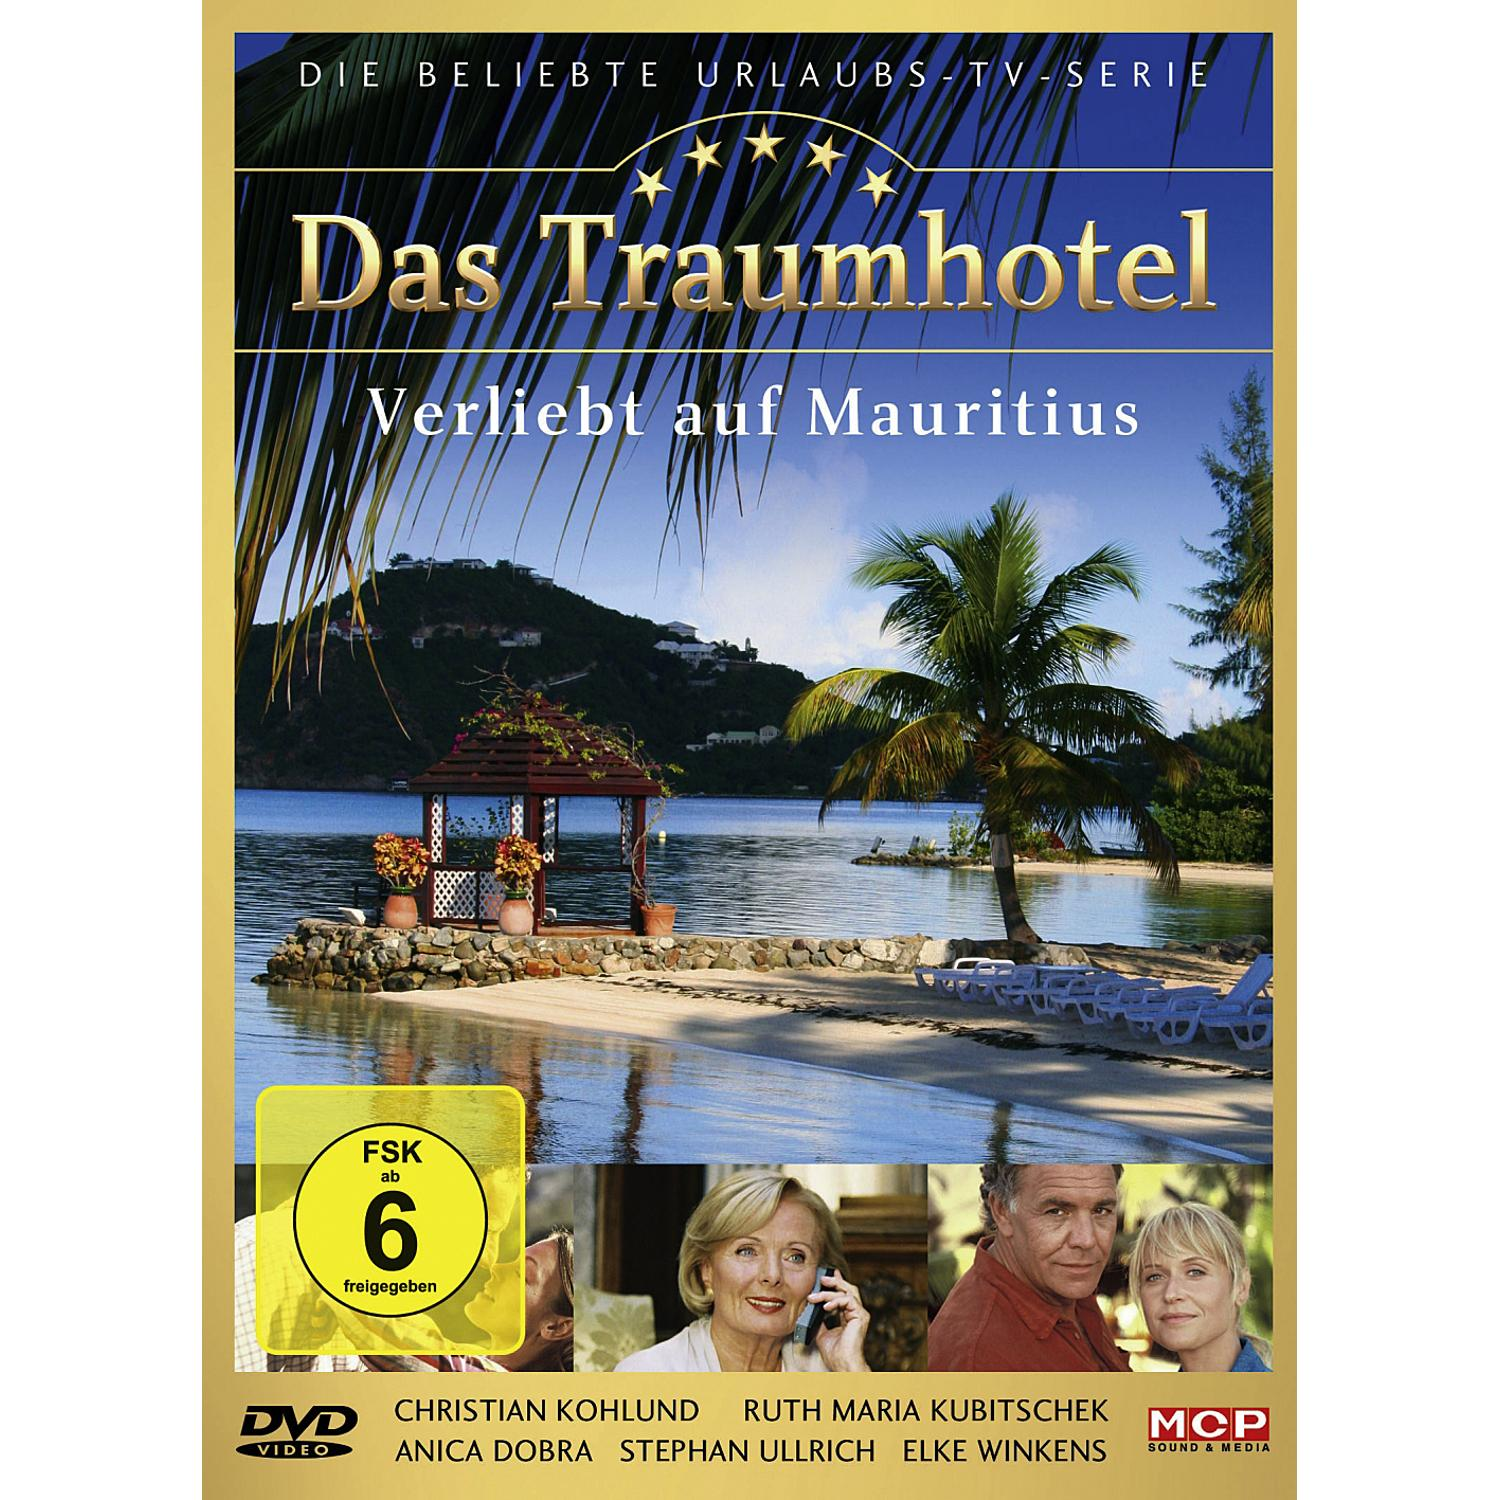 Mauritius Verliebt DVD Traumhotel: auf Das